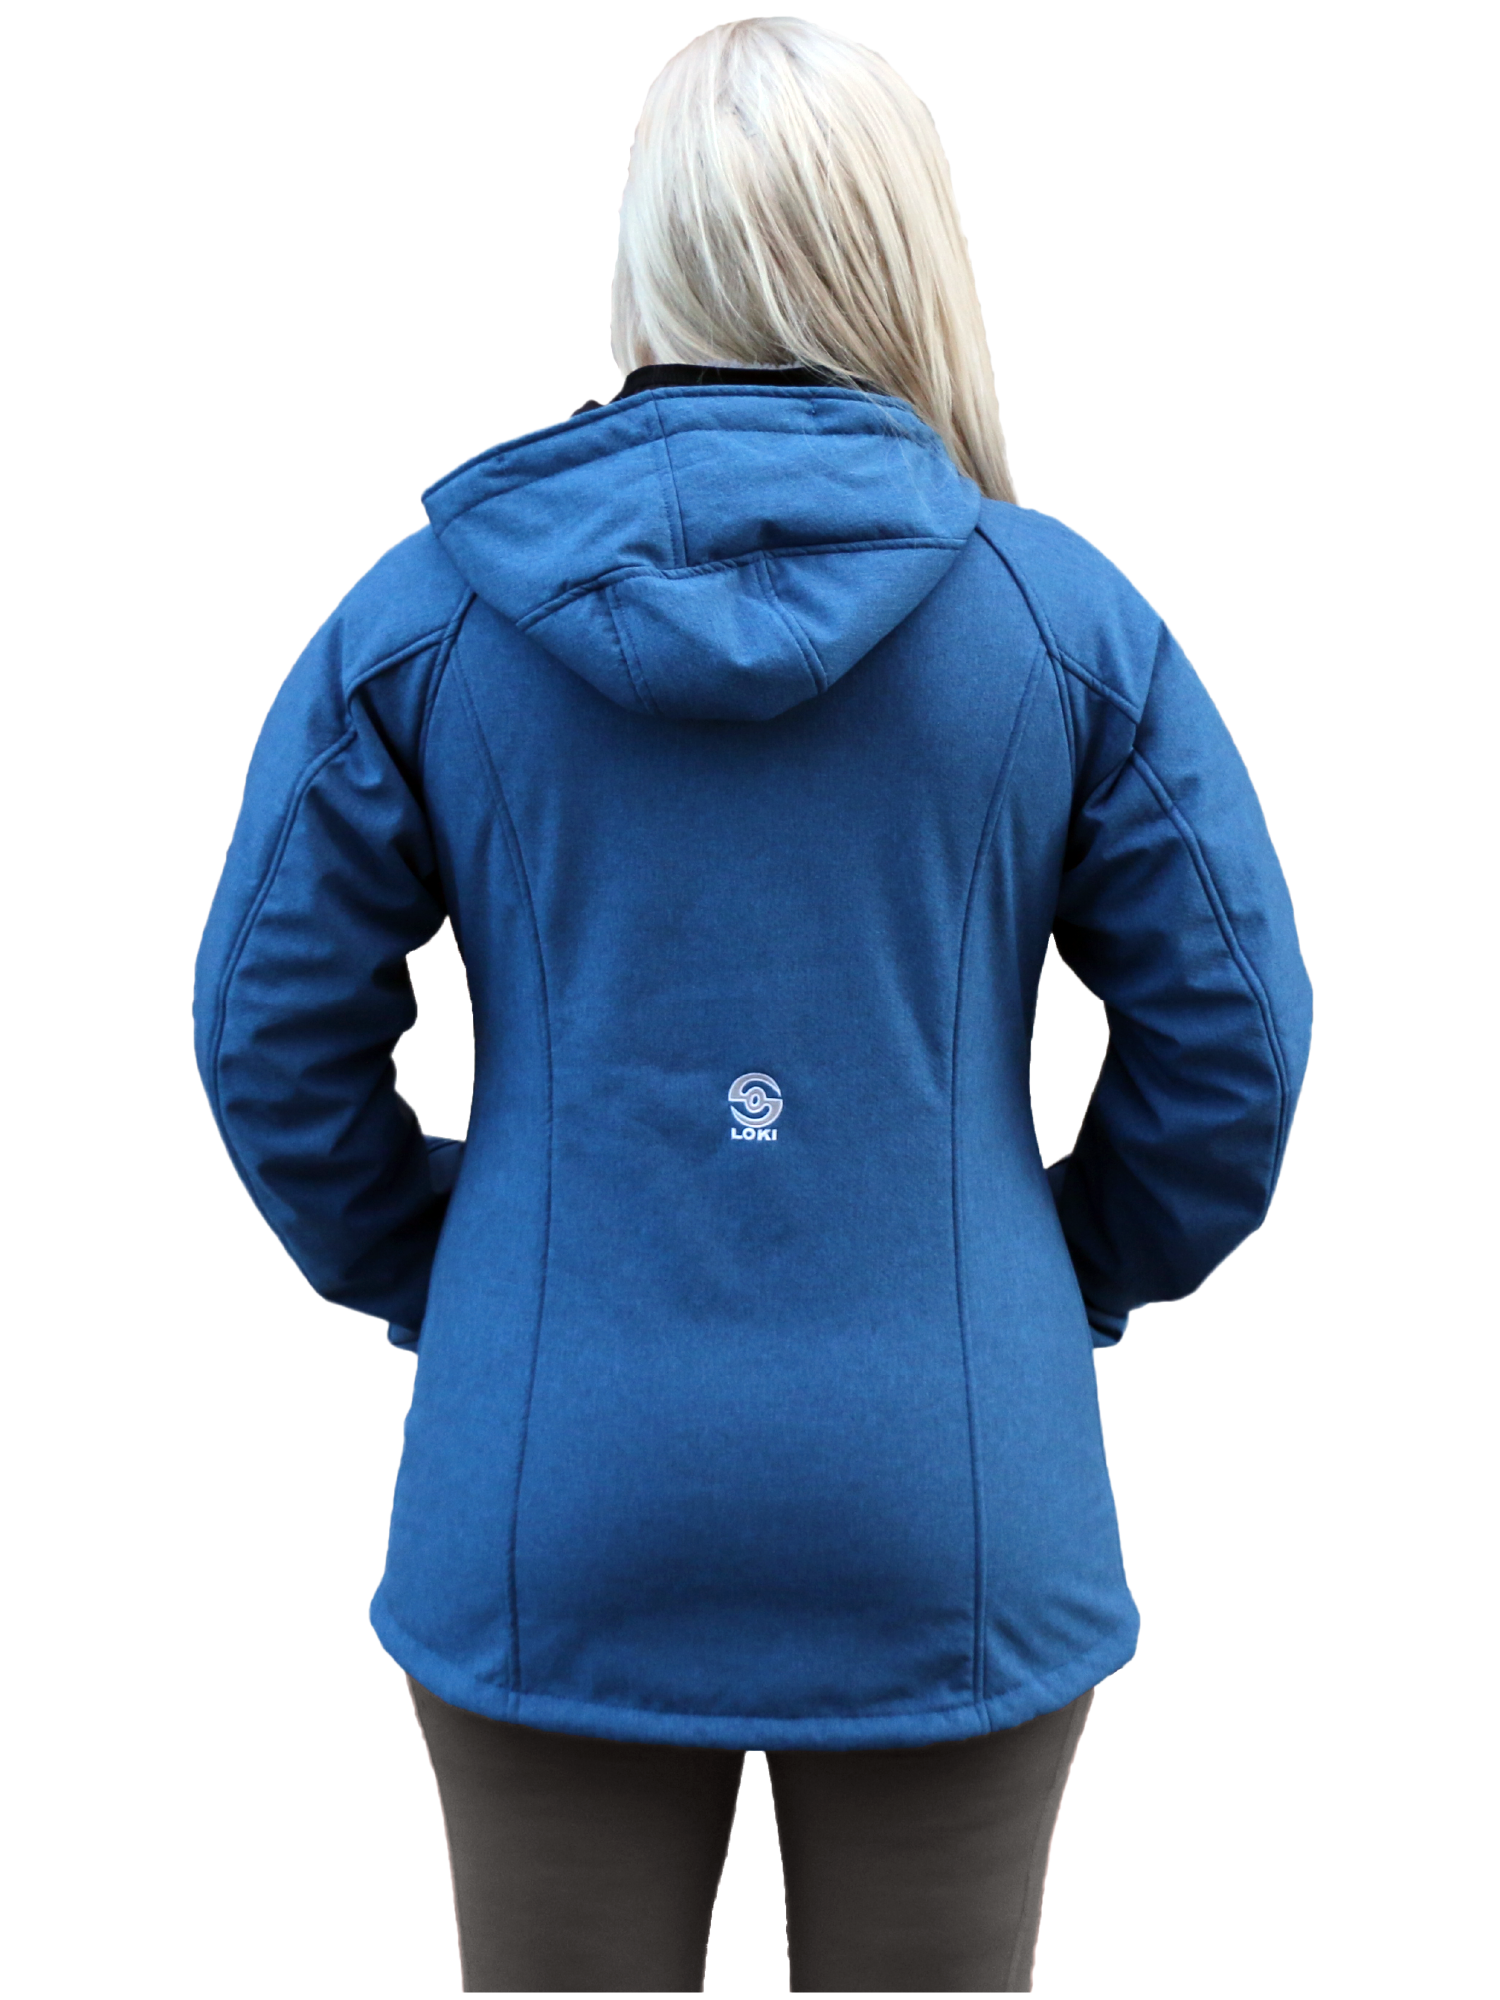 Women's Mountain Jacket - Bay Blue (Back)